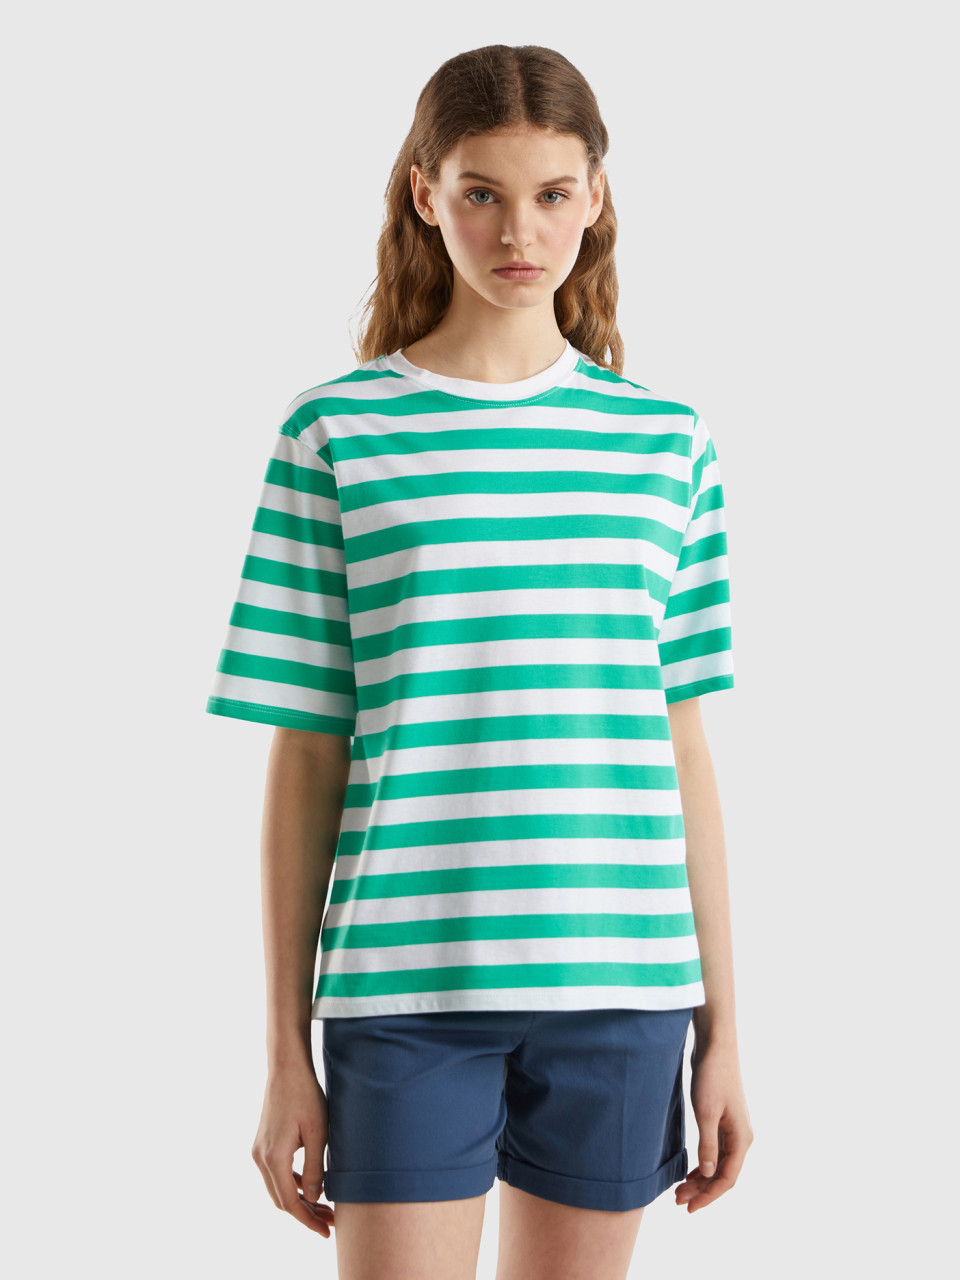 Benetton, Striped Comfort Fit T-shirt, Teal, Women